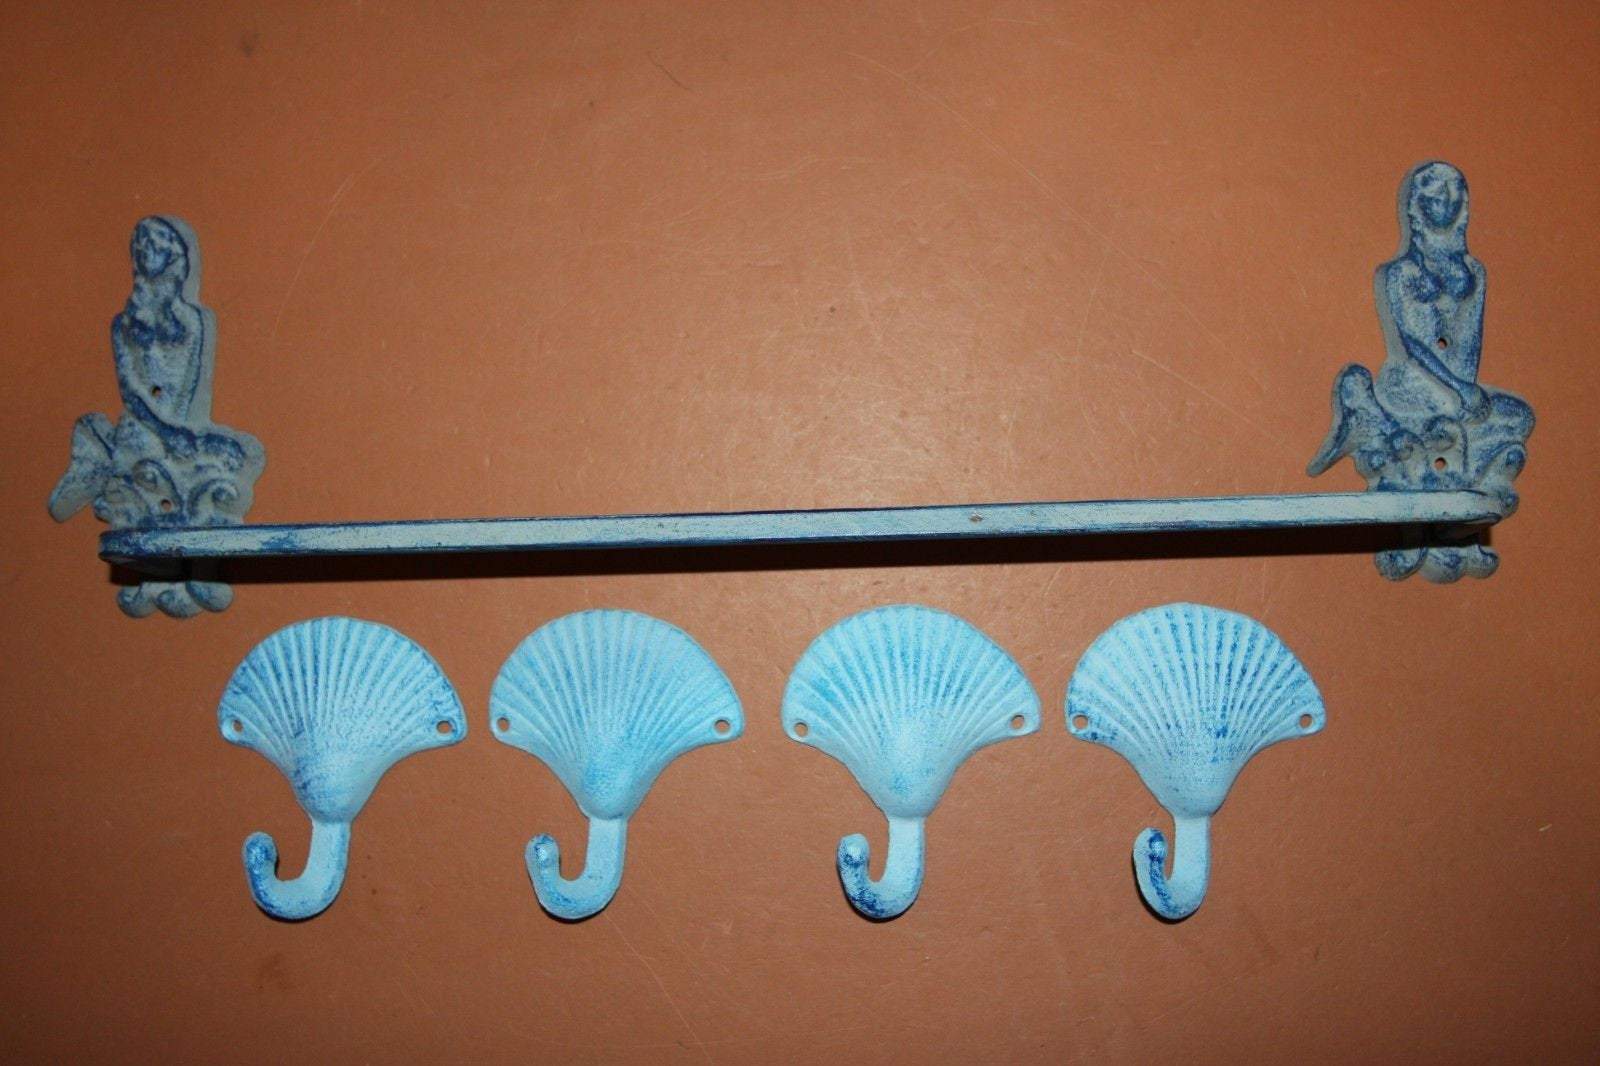 5) Vintage Look Mermaid Bath Decor, Mermaid Towel Bar Seahsell Towel Hooks Aqua Color Cast Iron Set of 5 pieces